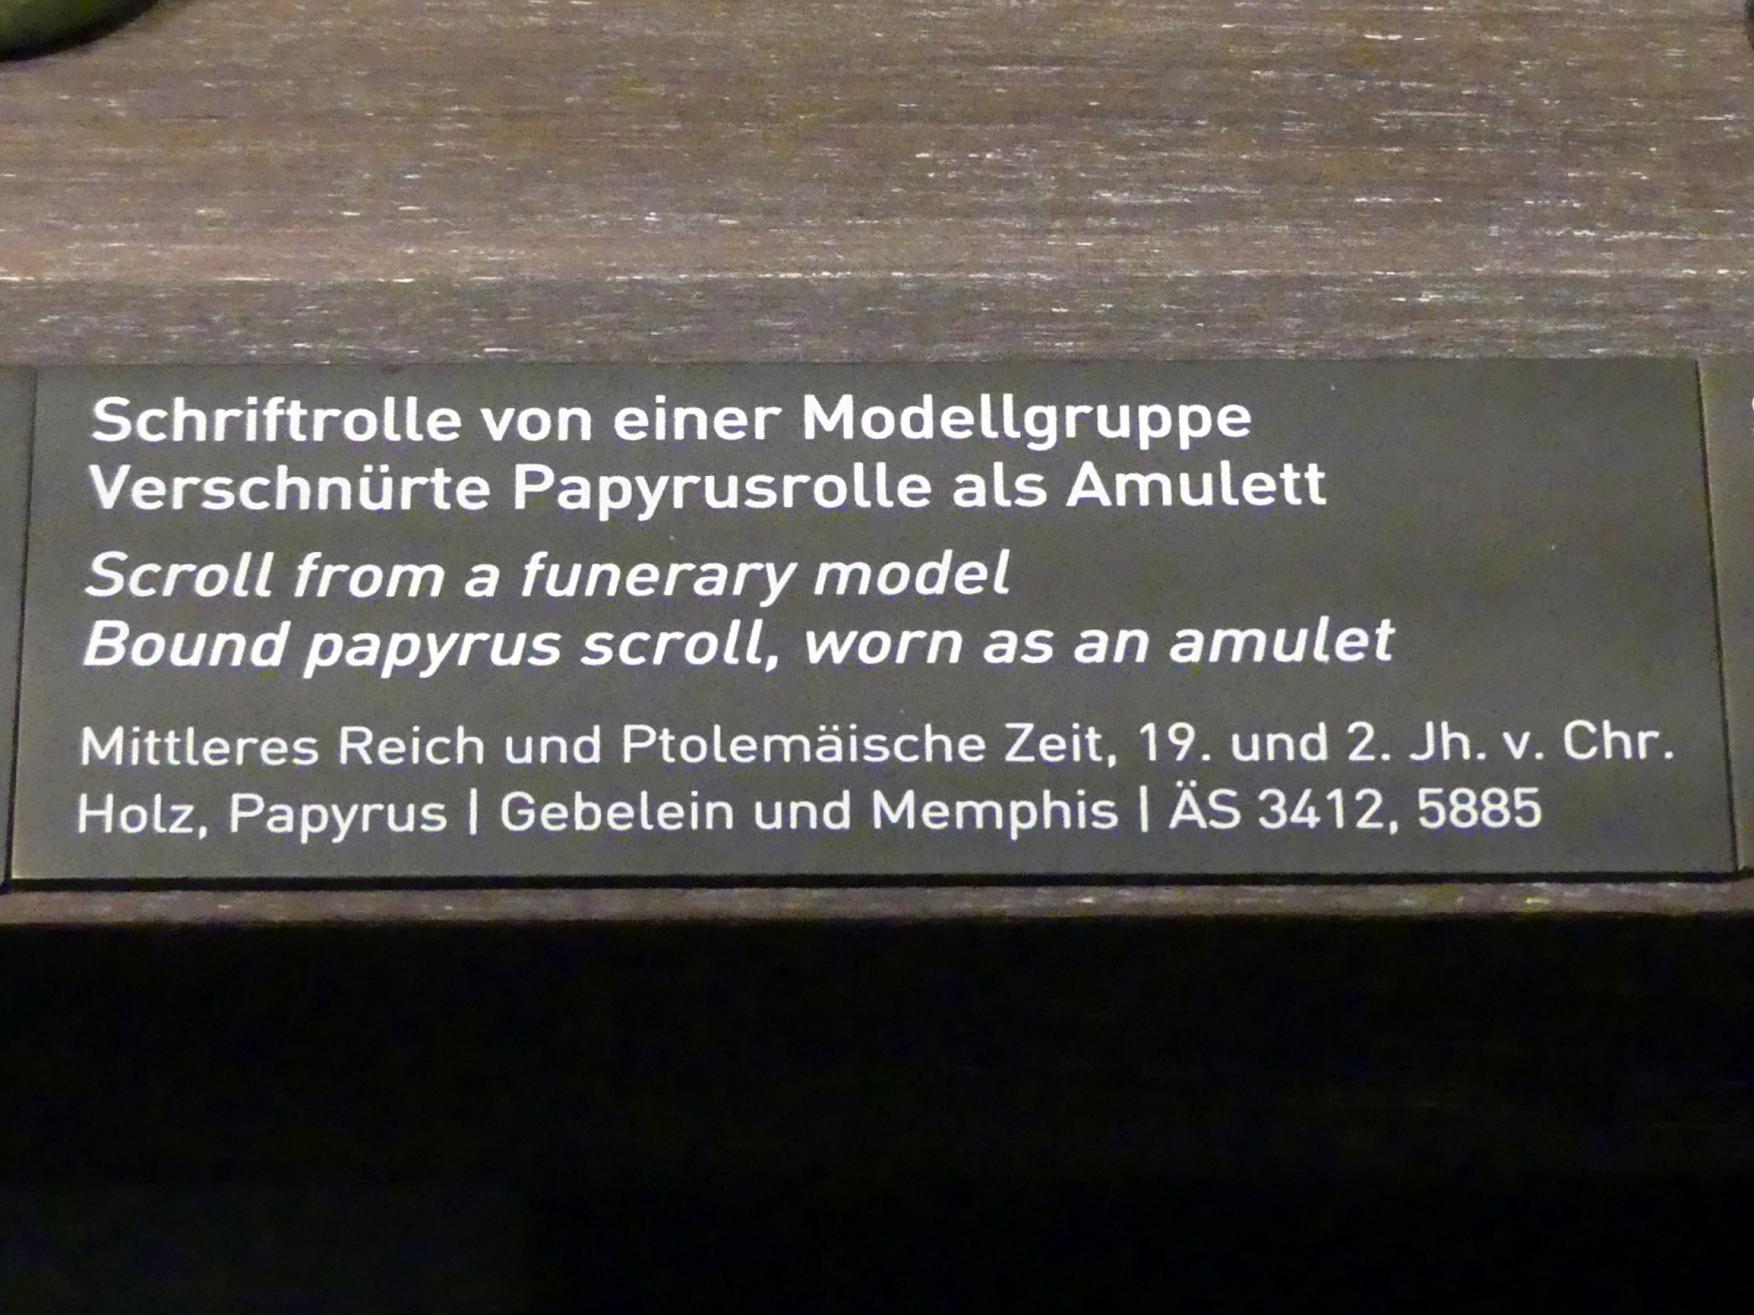 Verschnürte Papyrusrolle als Amulett, Ptolemäische Zeit, 400 v. Chr. - 1 n. Chr., 200 - 100 v. Chr., Bild 2/2